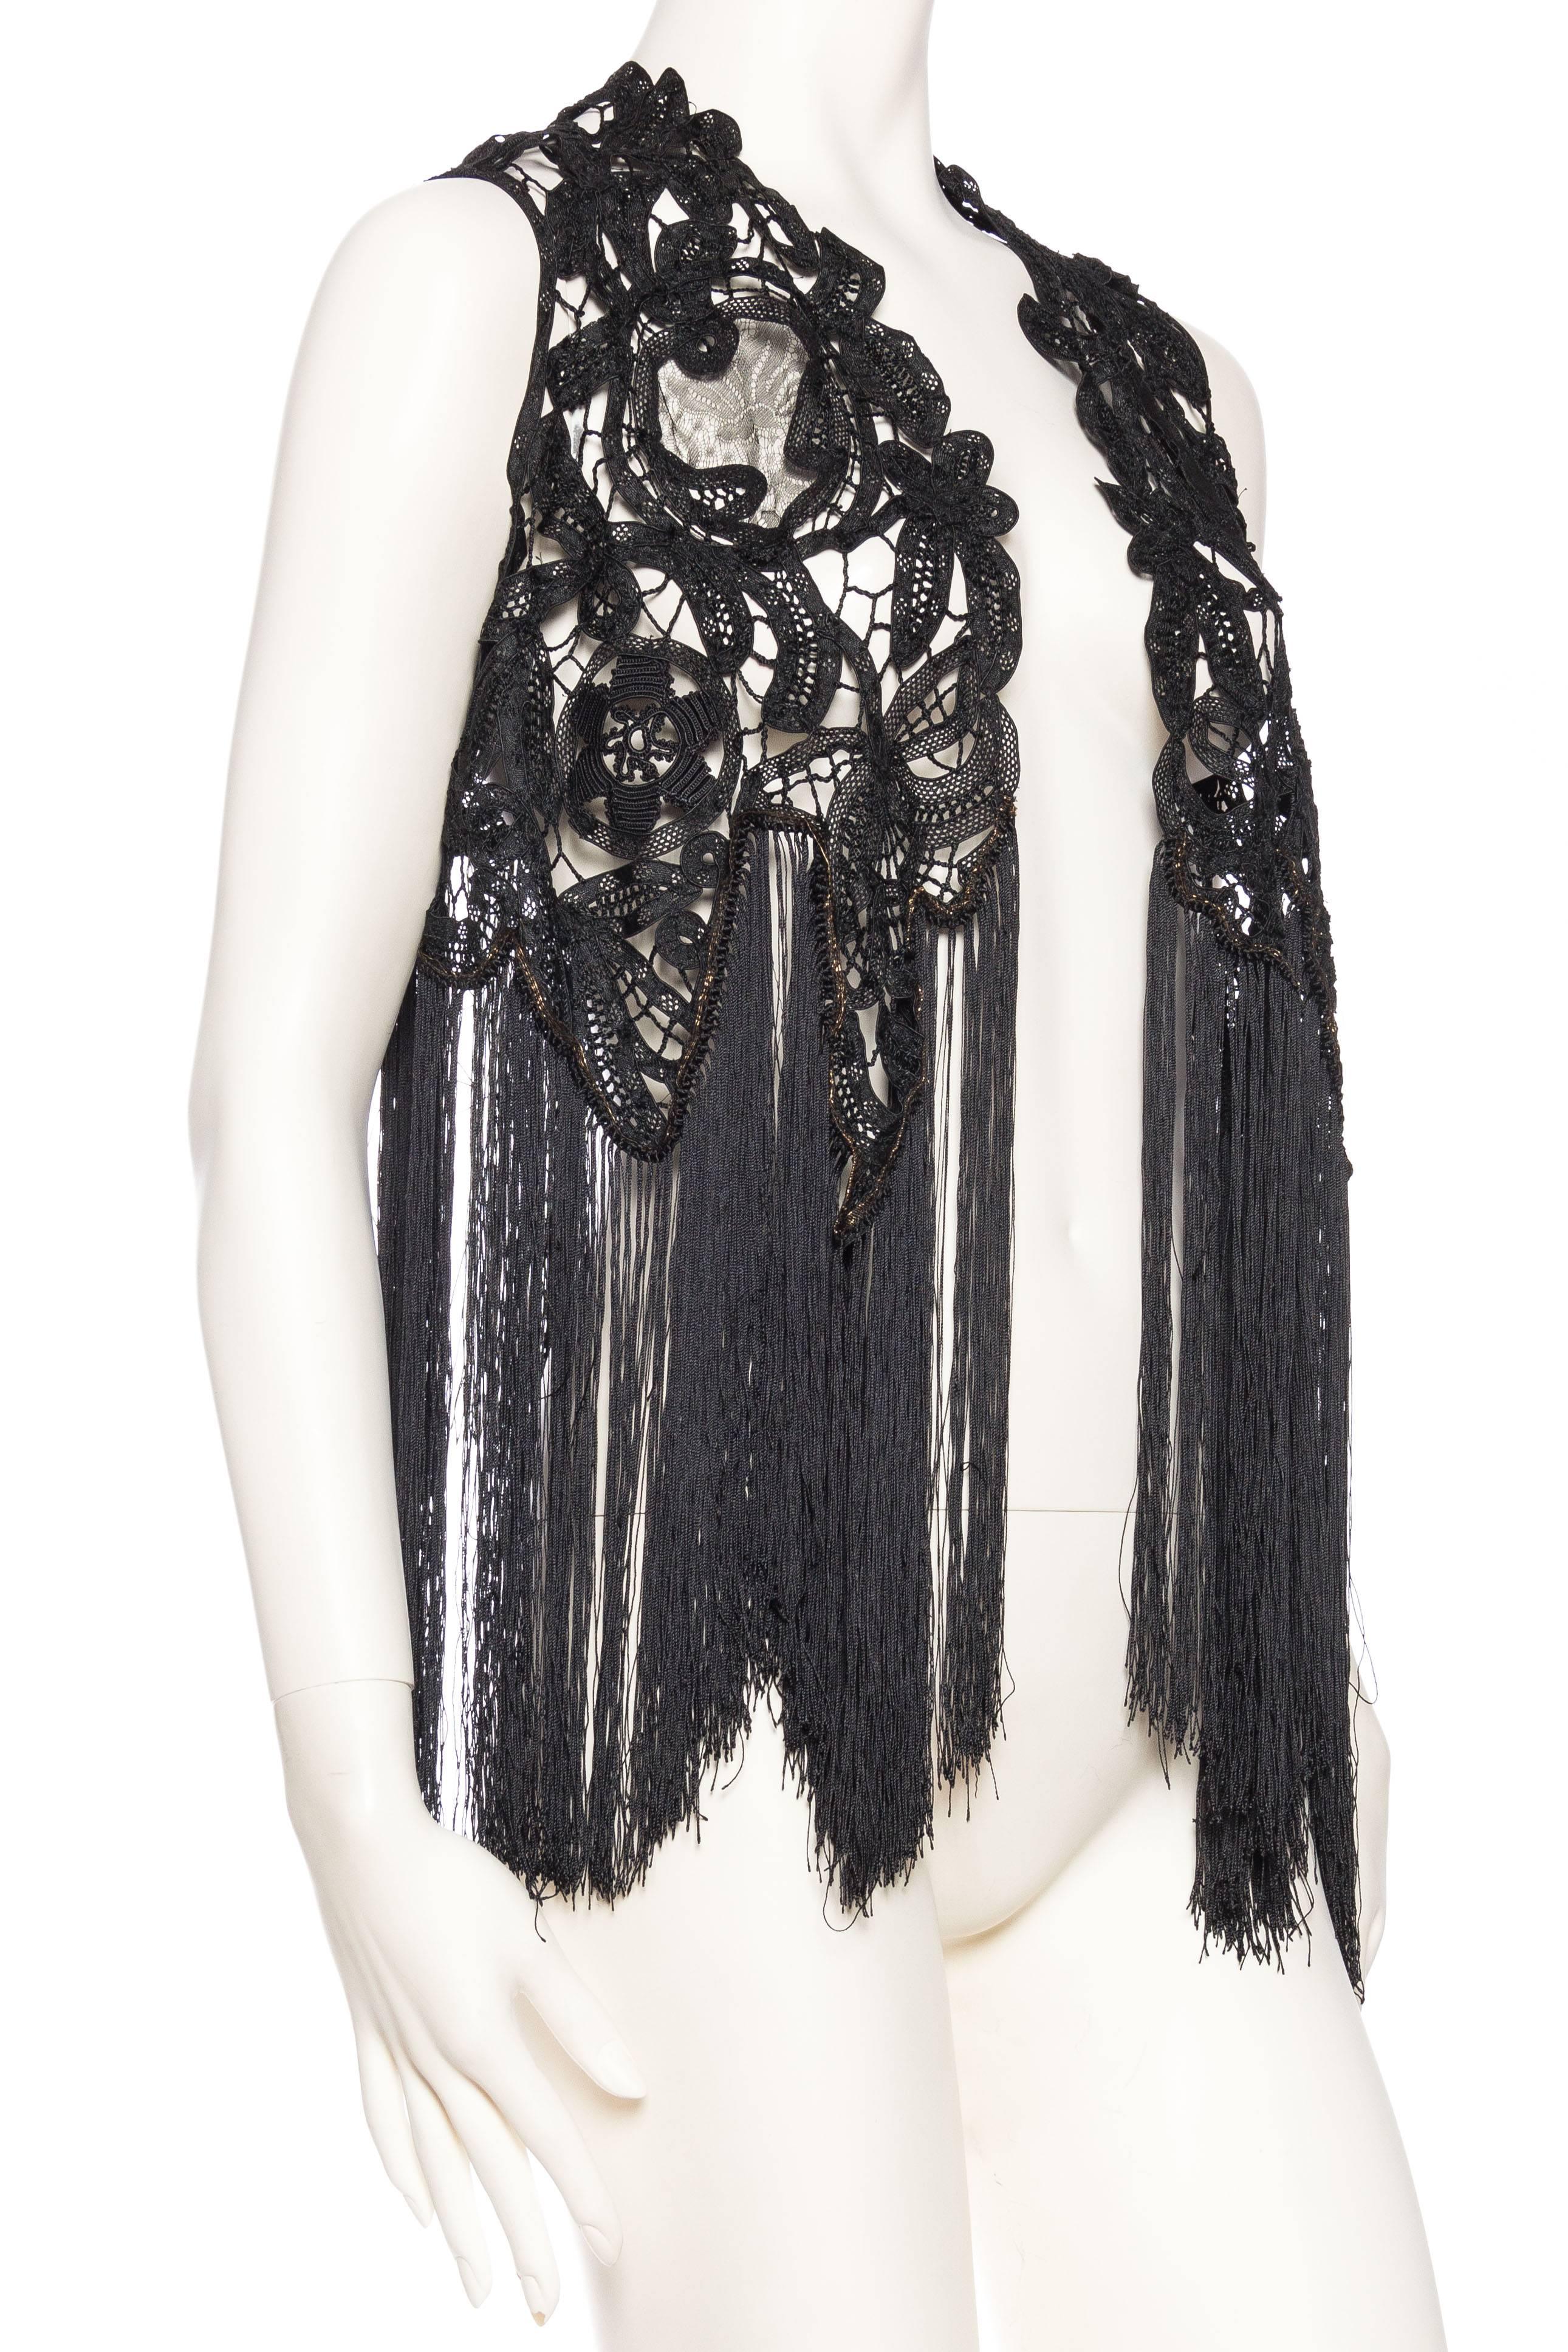 Black Antique Handmade Lace Vest with Fringe